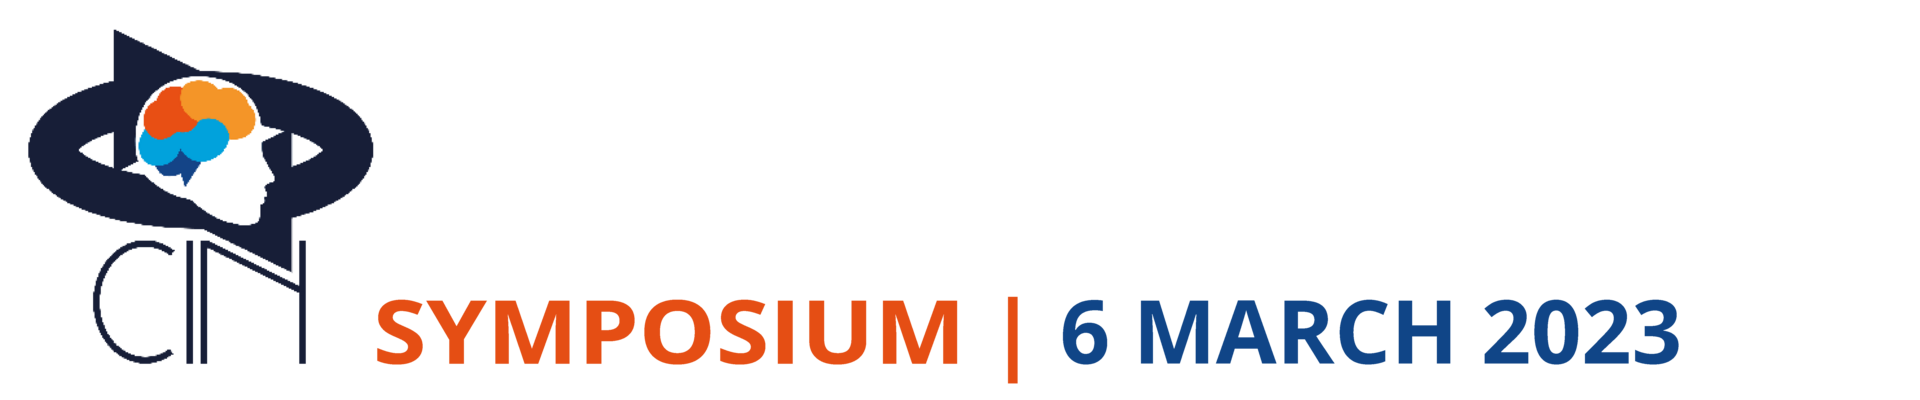 CIN Symposium 2023 maart